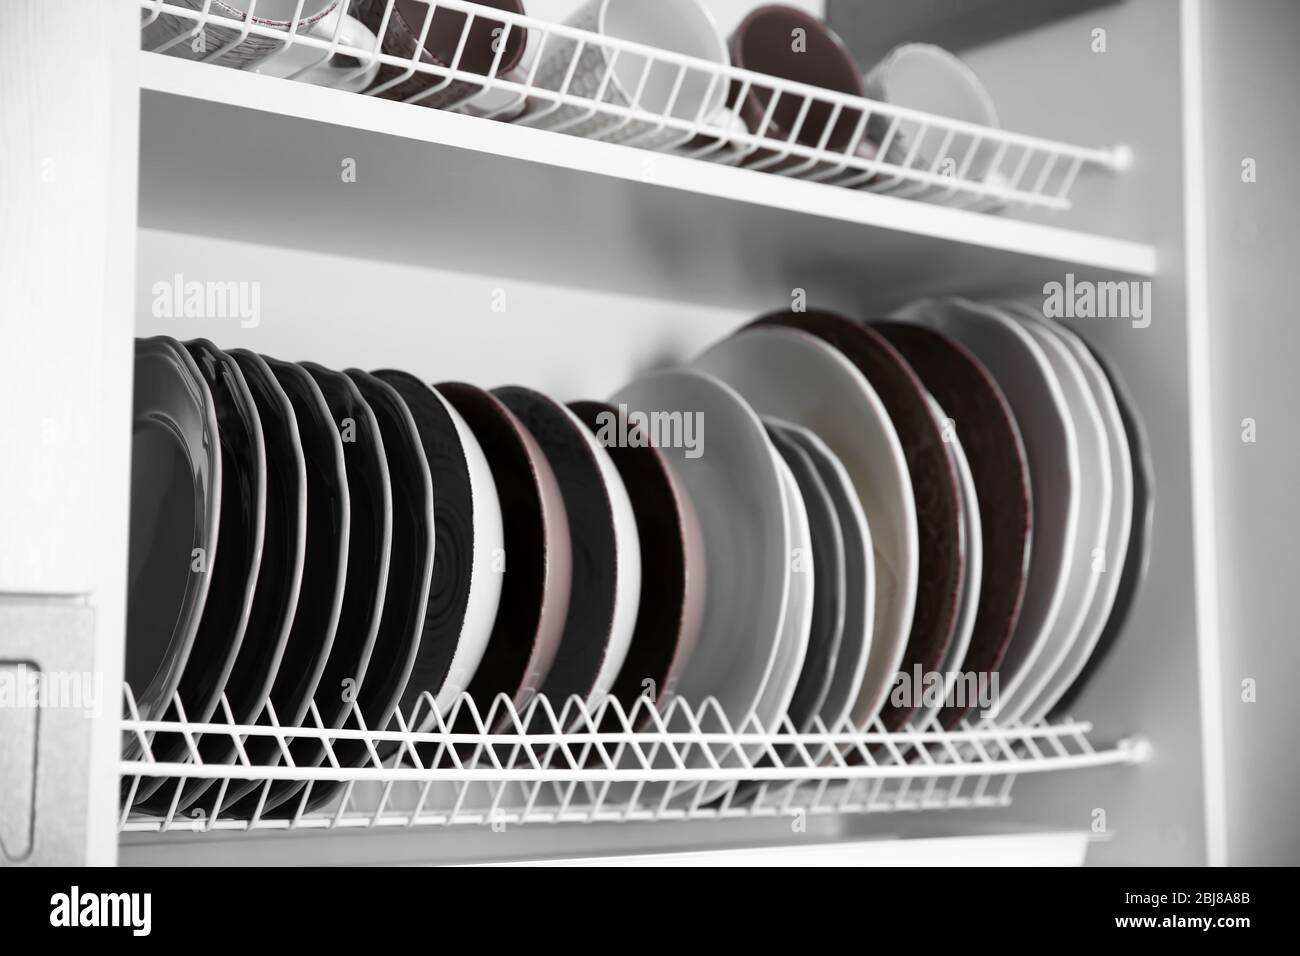 https://c8.alamy.com/comp/2BJ8A8B/clean-dishes-drying-on-metal-dish-racks-on-shelves-2BJ8A8B.jpg